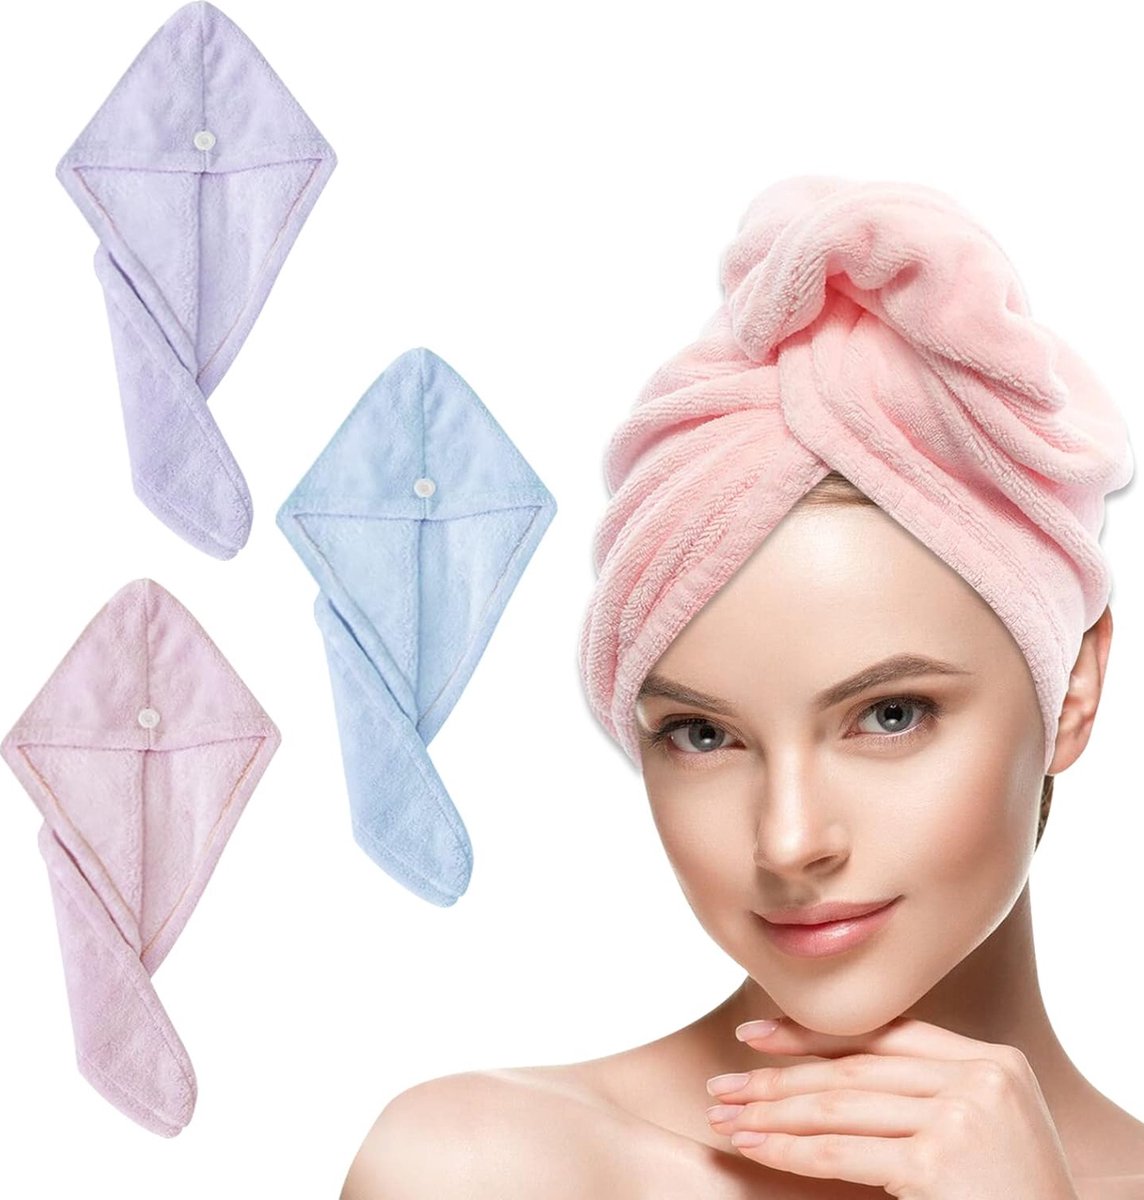 Haartulband, 3 stuks superabsorberende microvezel haarhanddoek met knopen, voor dames en meisjes, lang, dik haar (roze, blauw en paars)